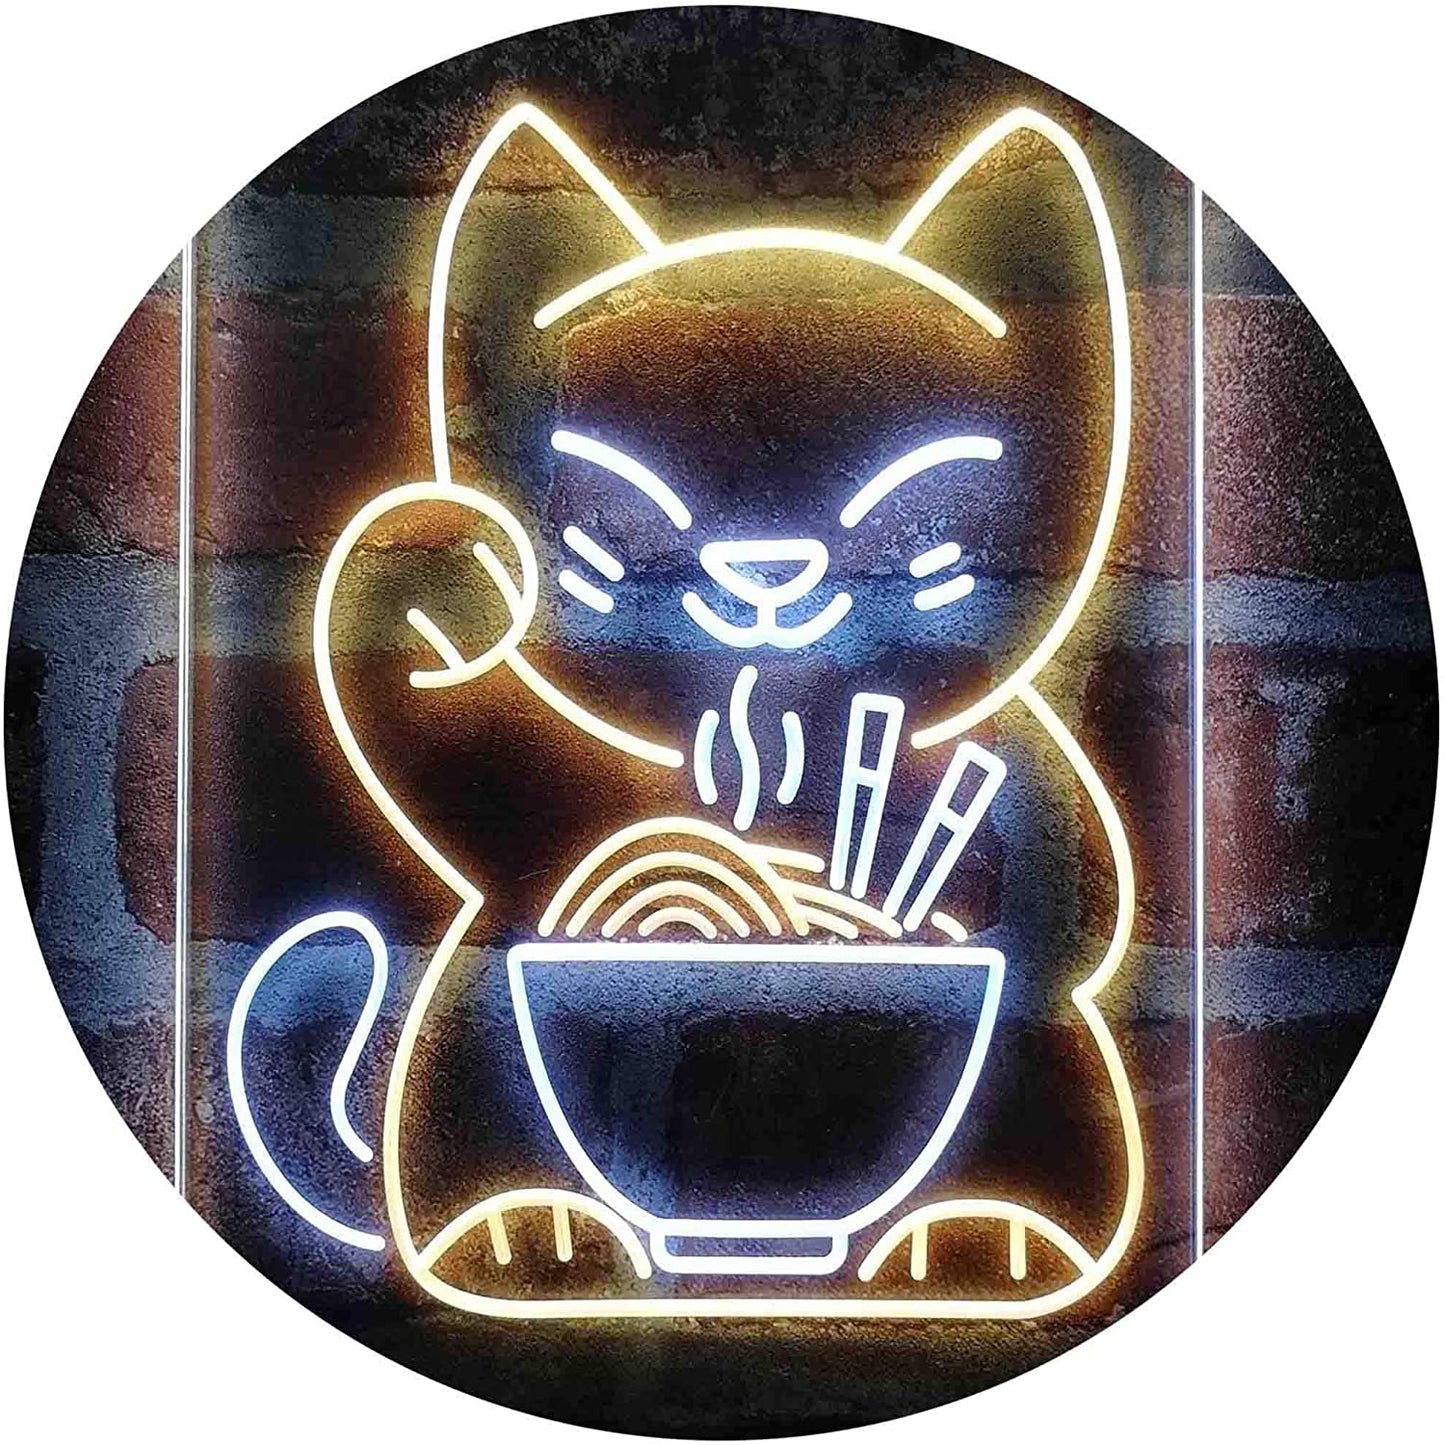 Maneki Neko Ramen Luck Cat LED Neon Light Sign - Way Up Gifts